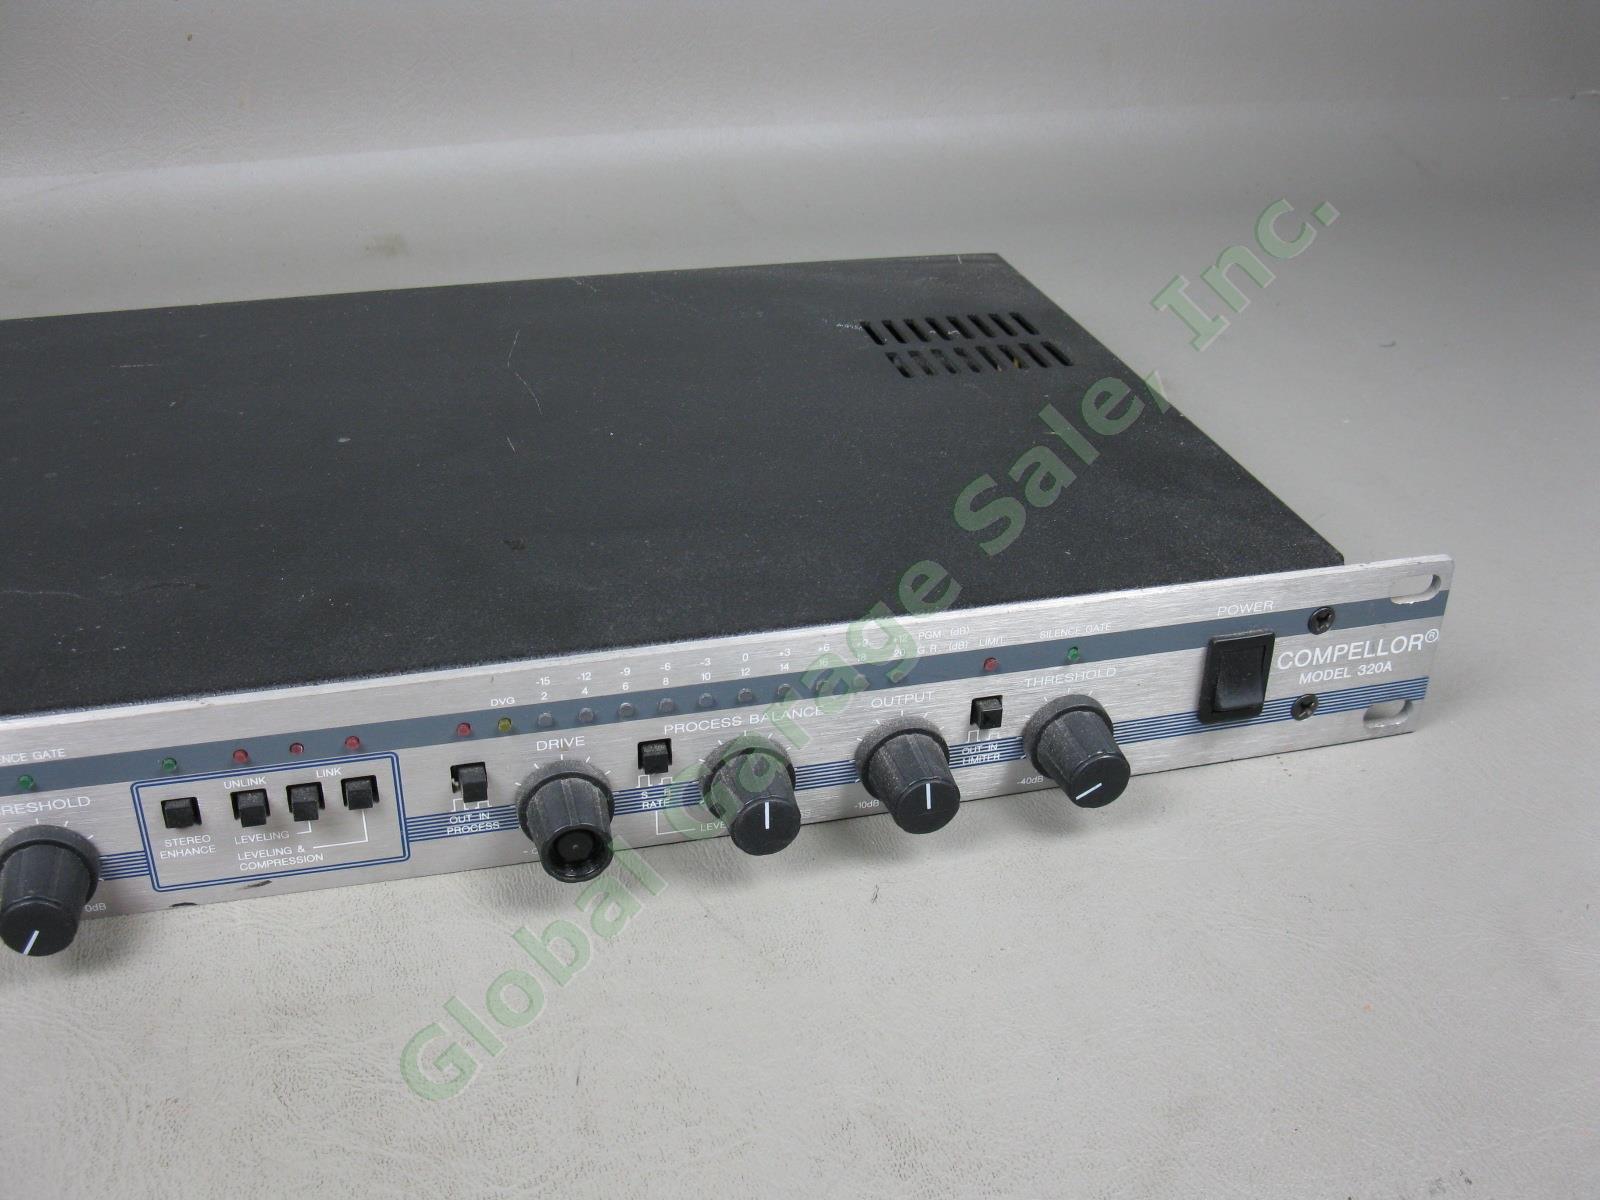 Aphex Compellor 320A Dual Channel Rack Mount Audio Compressor Leveler Limiter NR 2